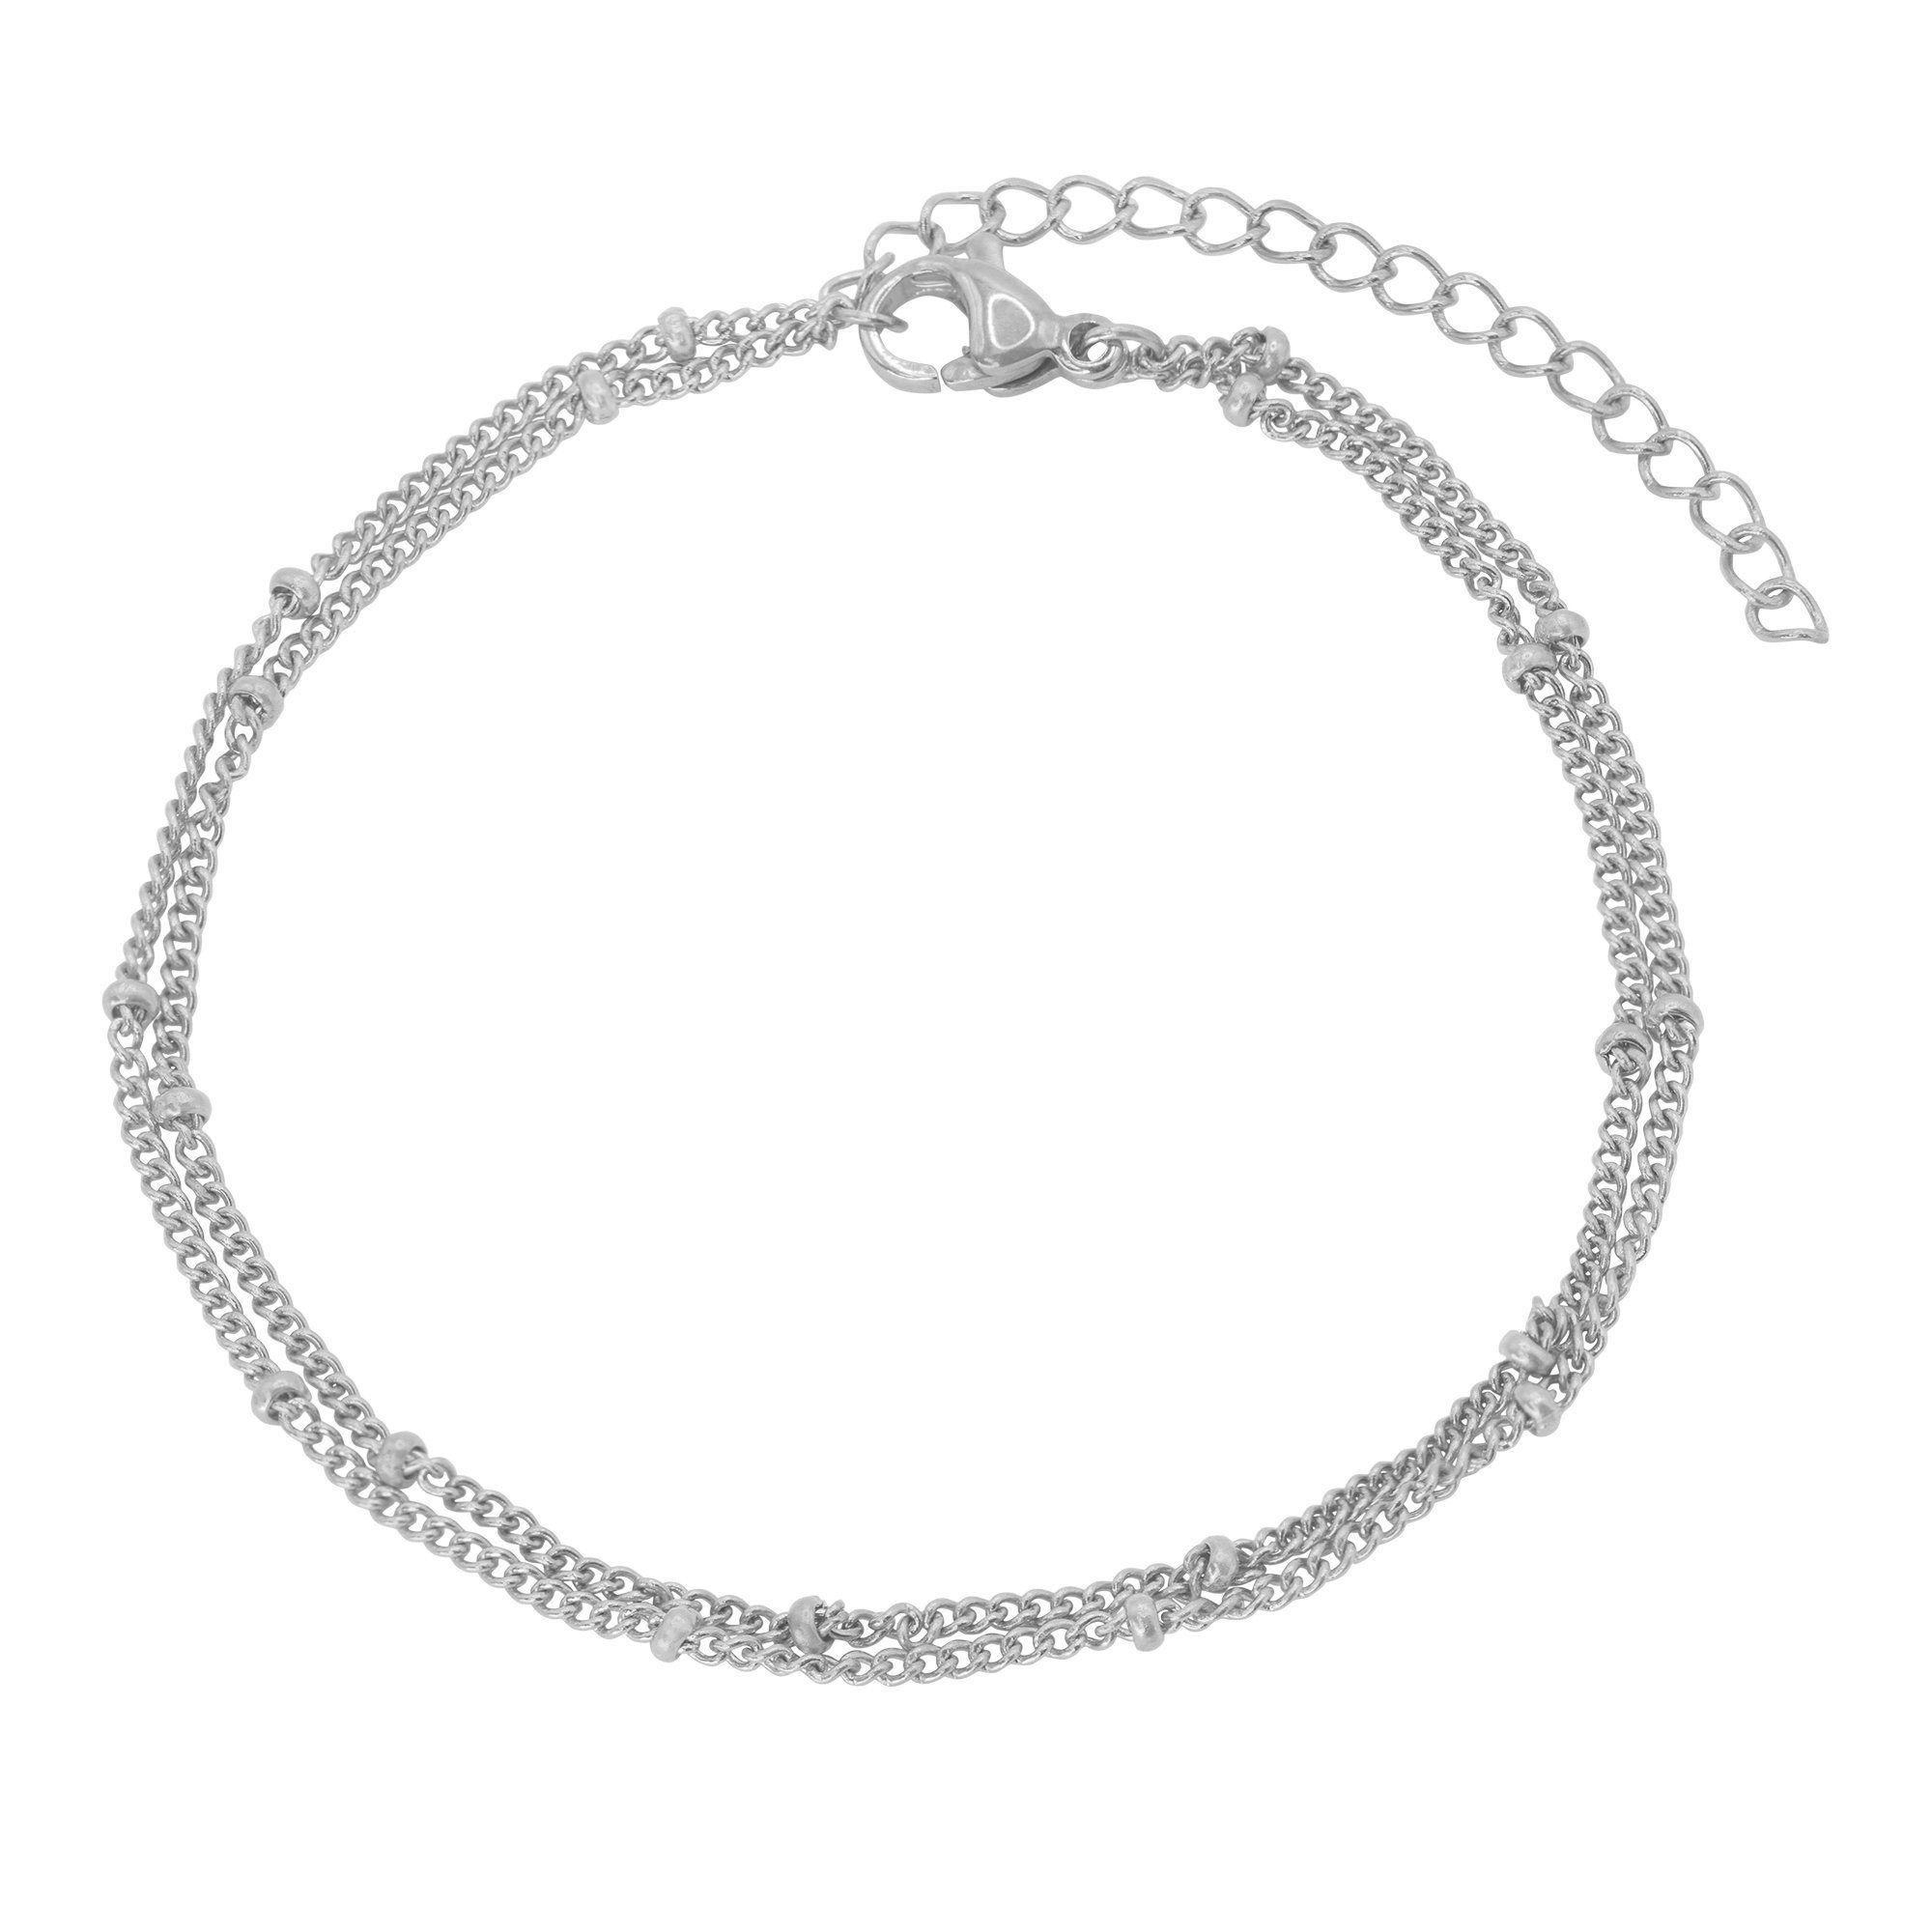 Heideman Armband Kaden silberfarben (Armband, inkl. Geschenkverpackung), Armband Damen mit kleinen Perlen